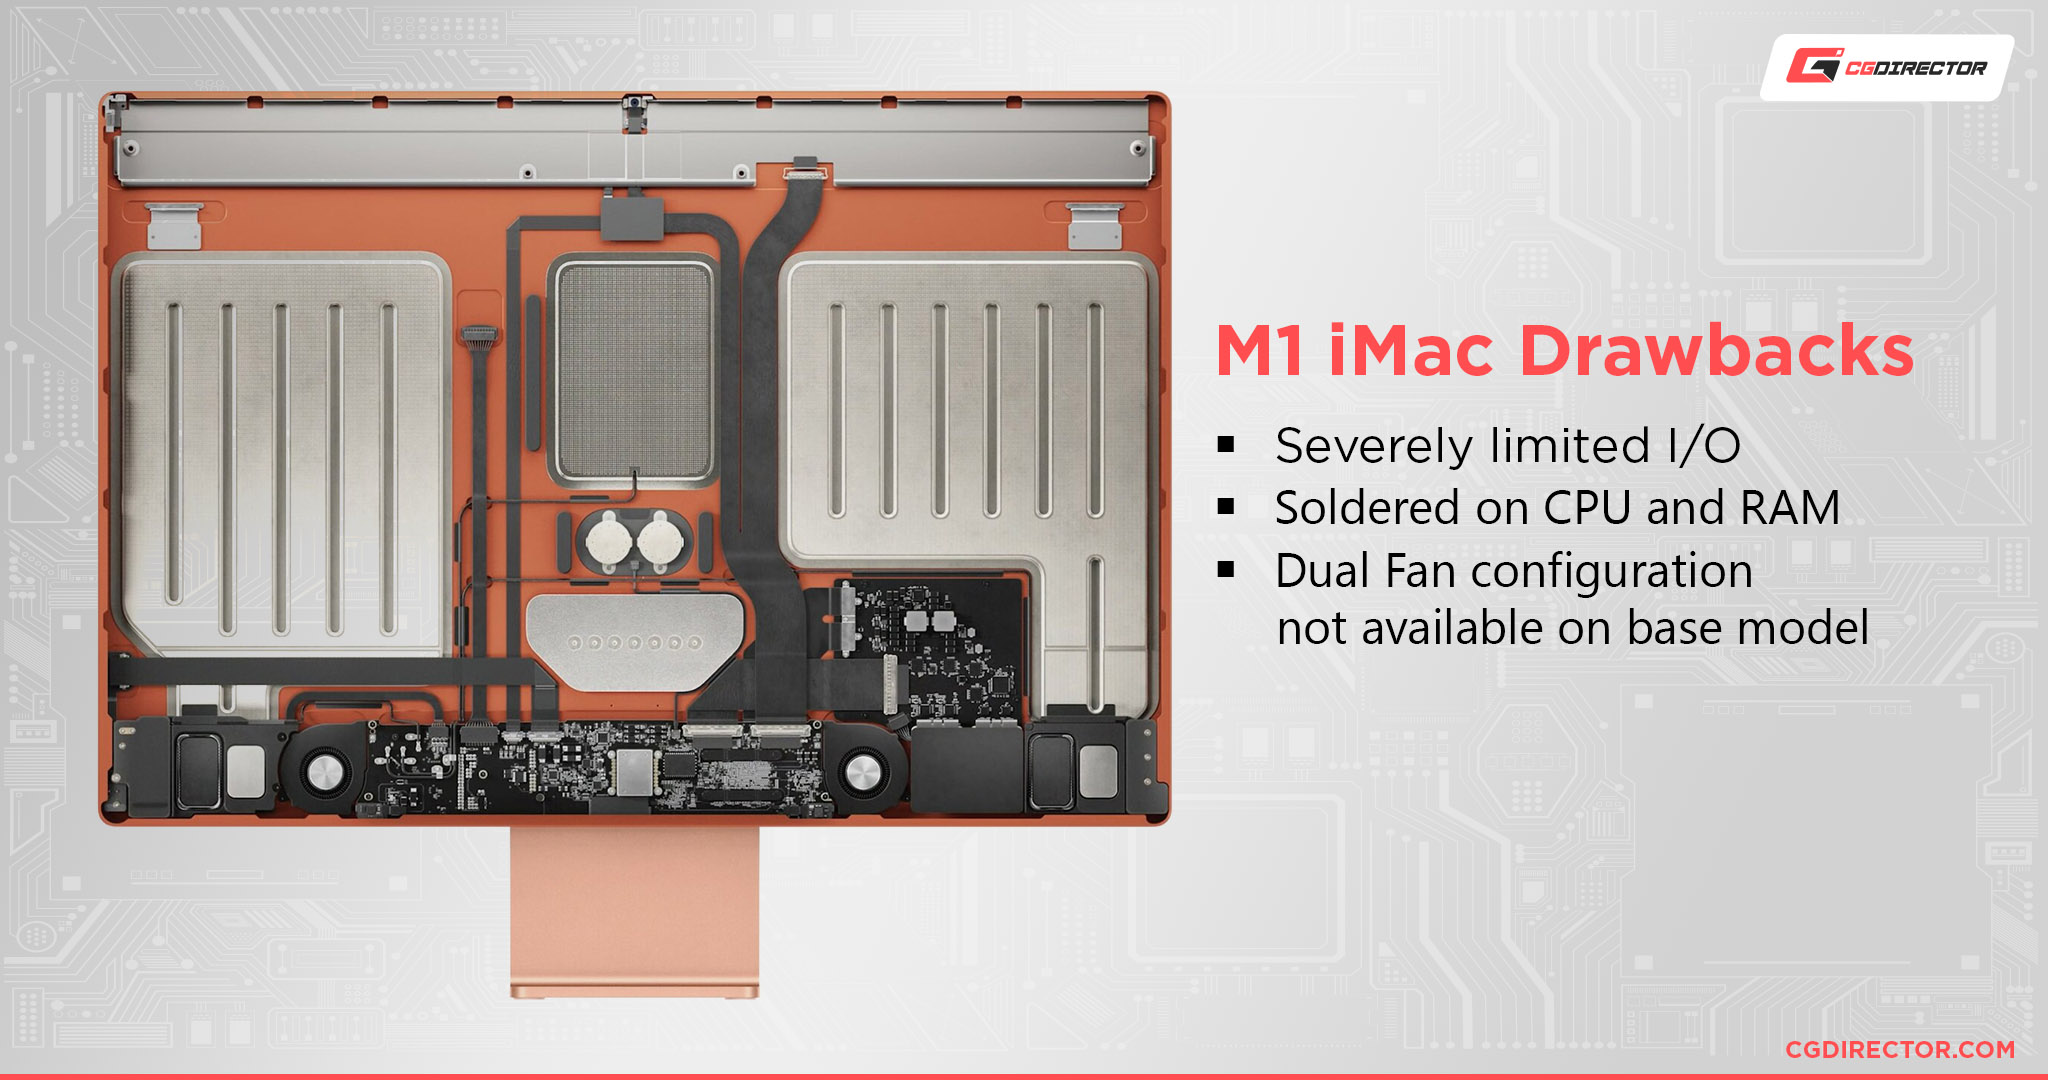 M1 iMac Drawbacks